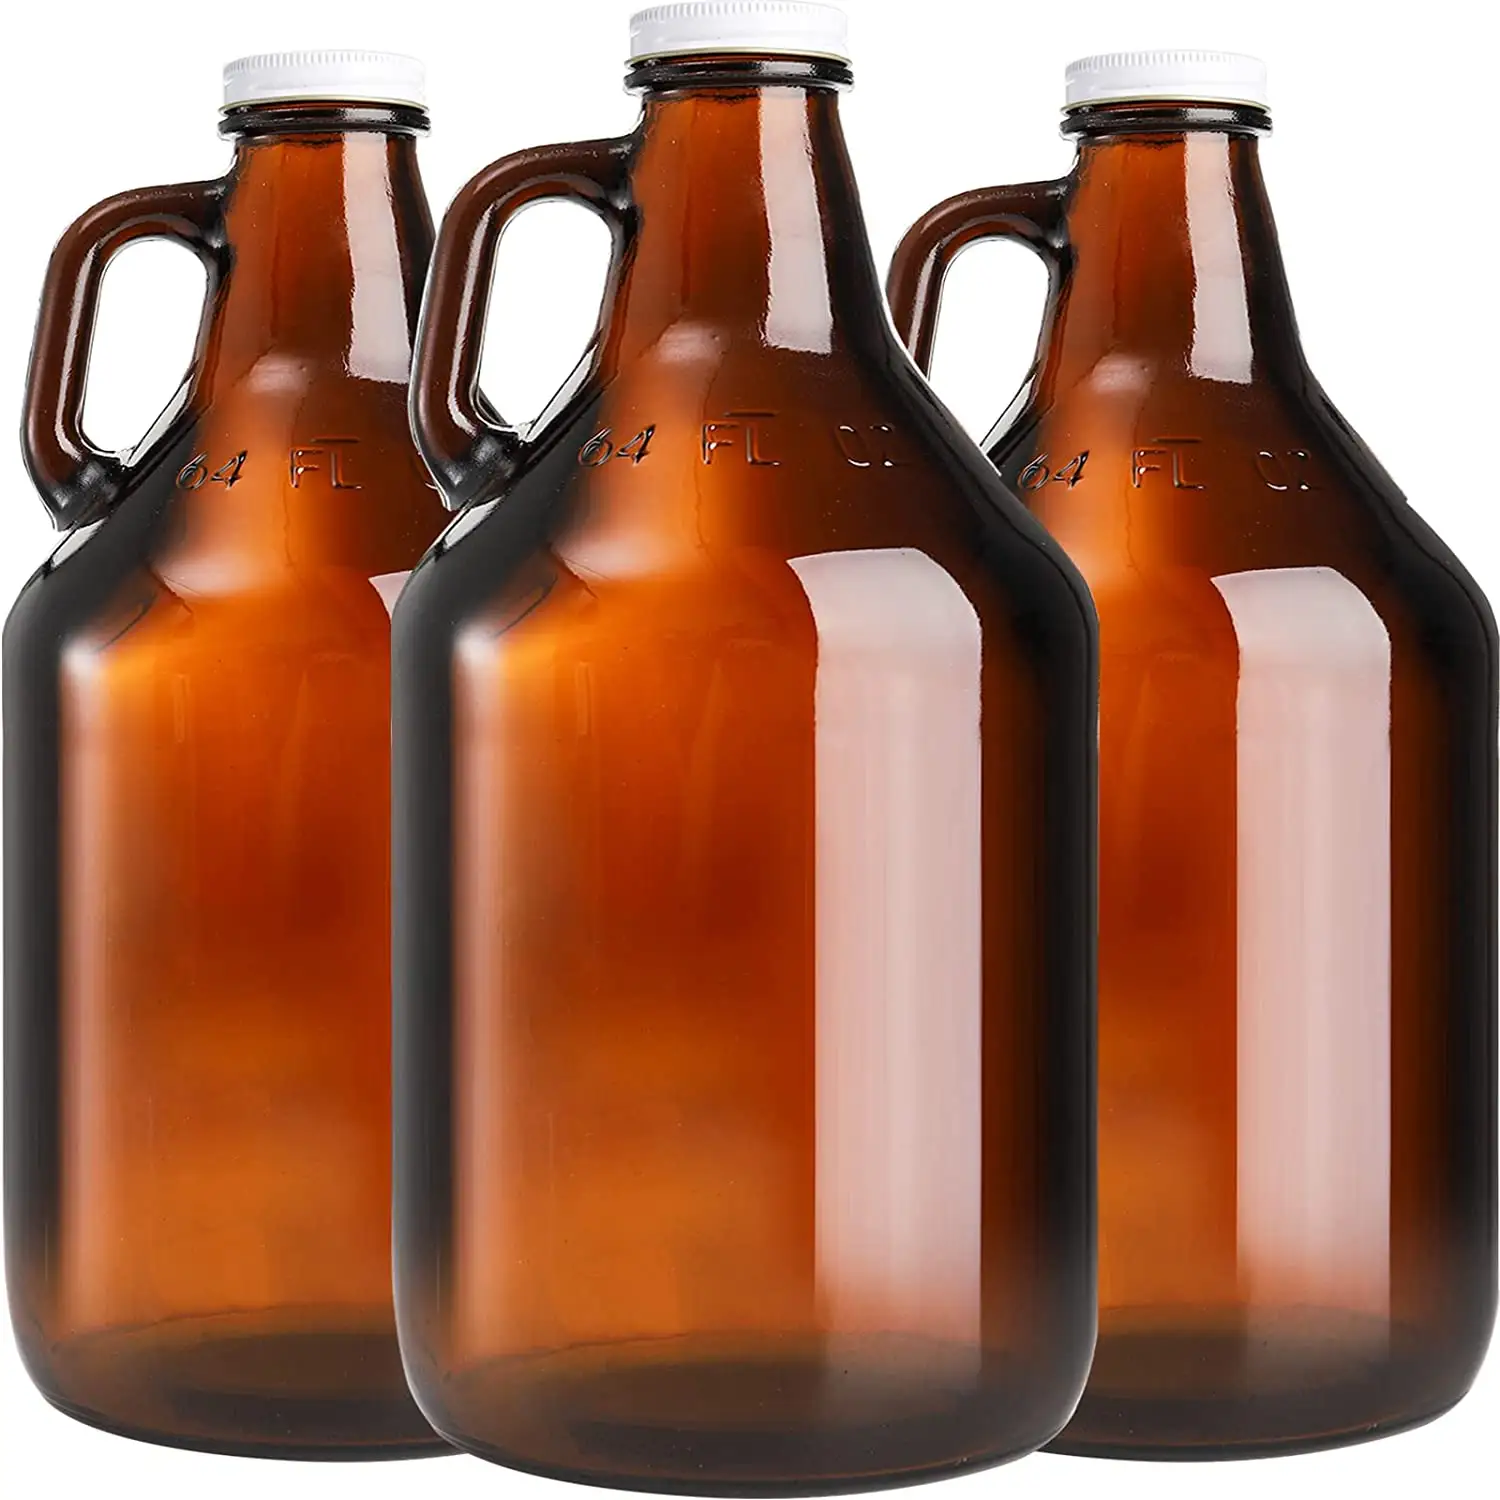 Amber Beer Glasflasche Getränk 64oz 2L Amber Glass Growler Weinflasche mit weißem Aluminium Schraub verschluss